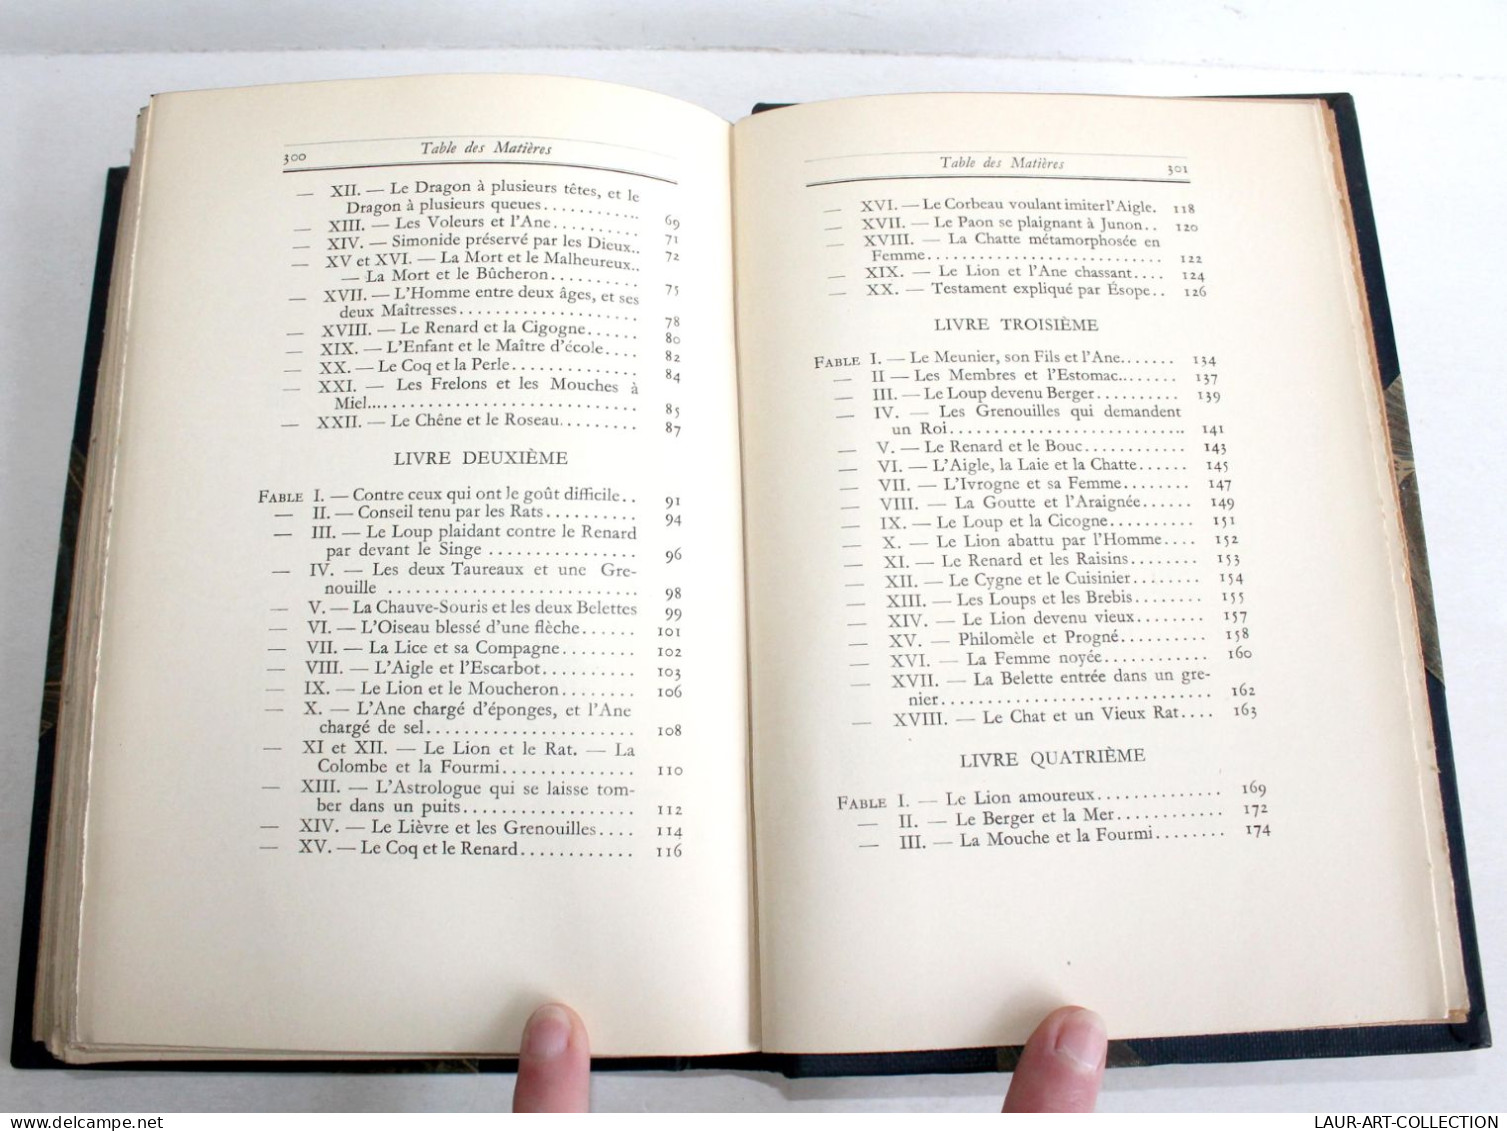 LA FONTAINE FABLES TEXTE INTEGRAL + TABLE CONCORDANCE De MICHAUT 1927 EX. NUMERO / ANCIEN LIVRE XXe SIECLE (2603.134) - 1901-1940